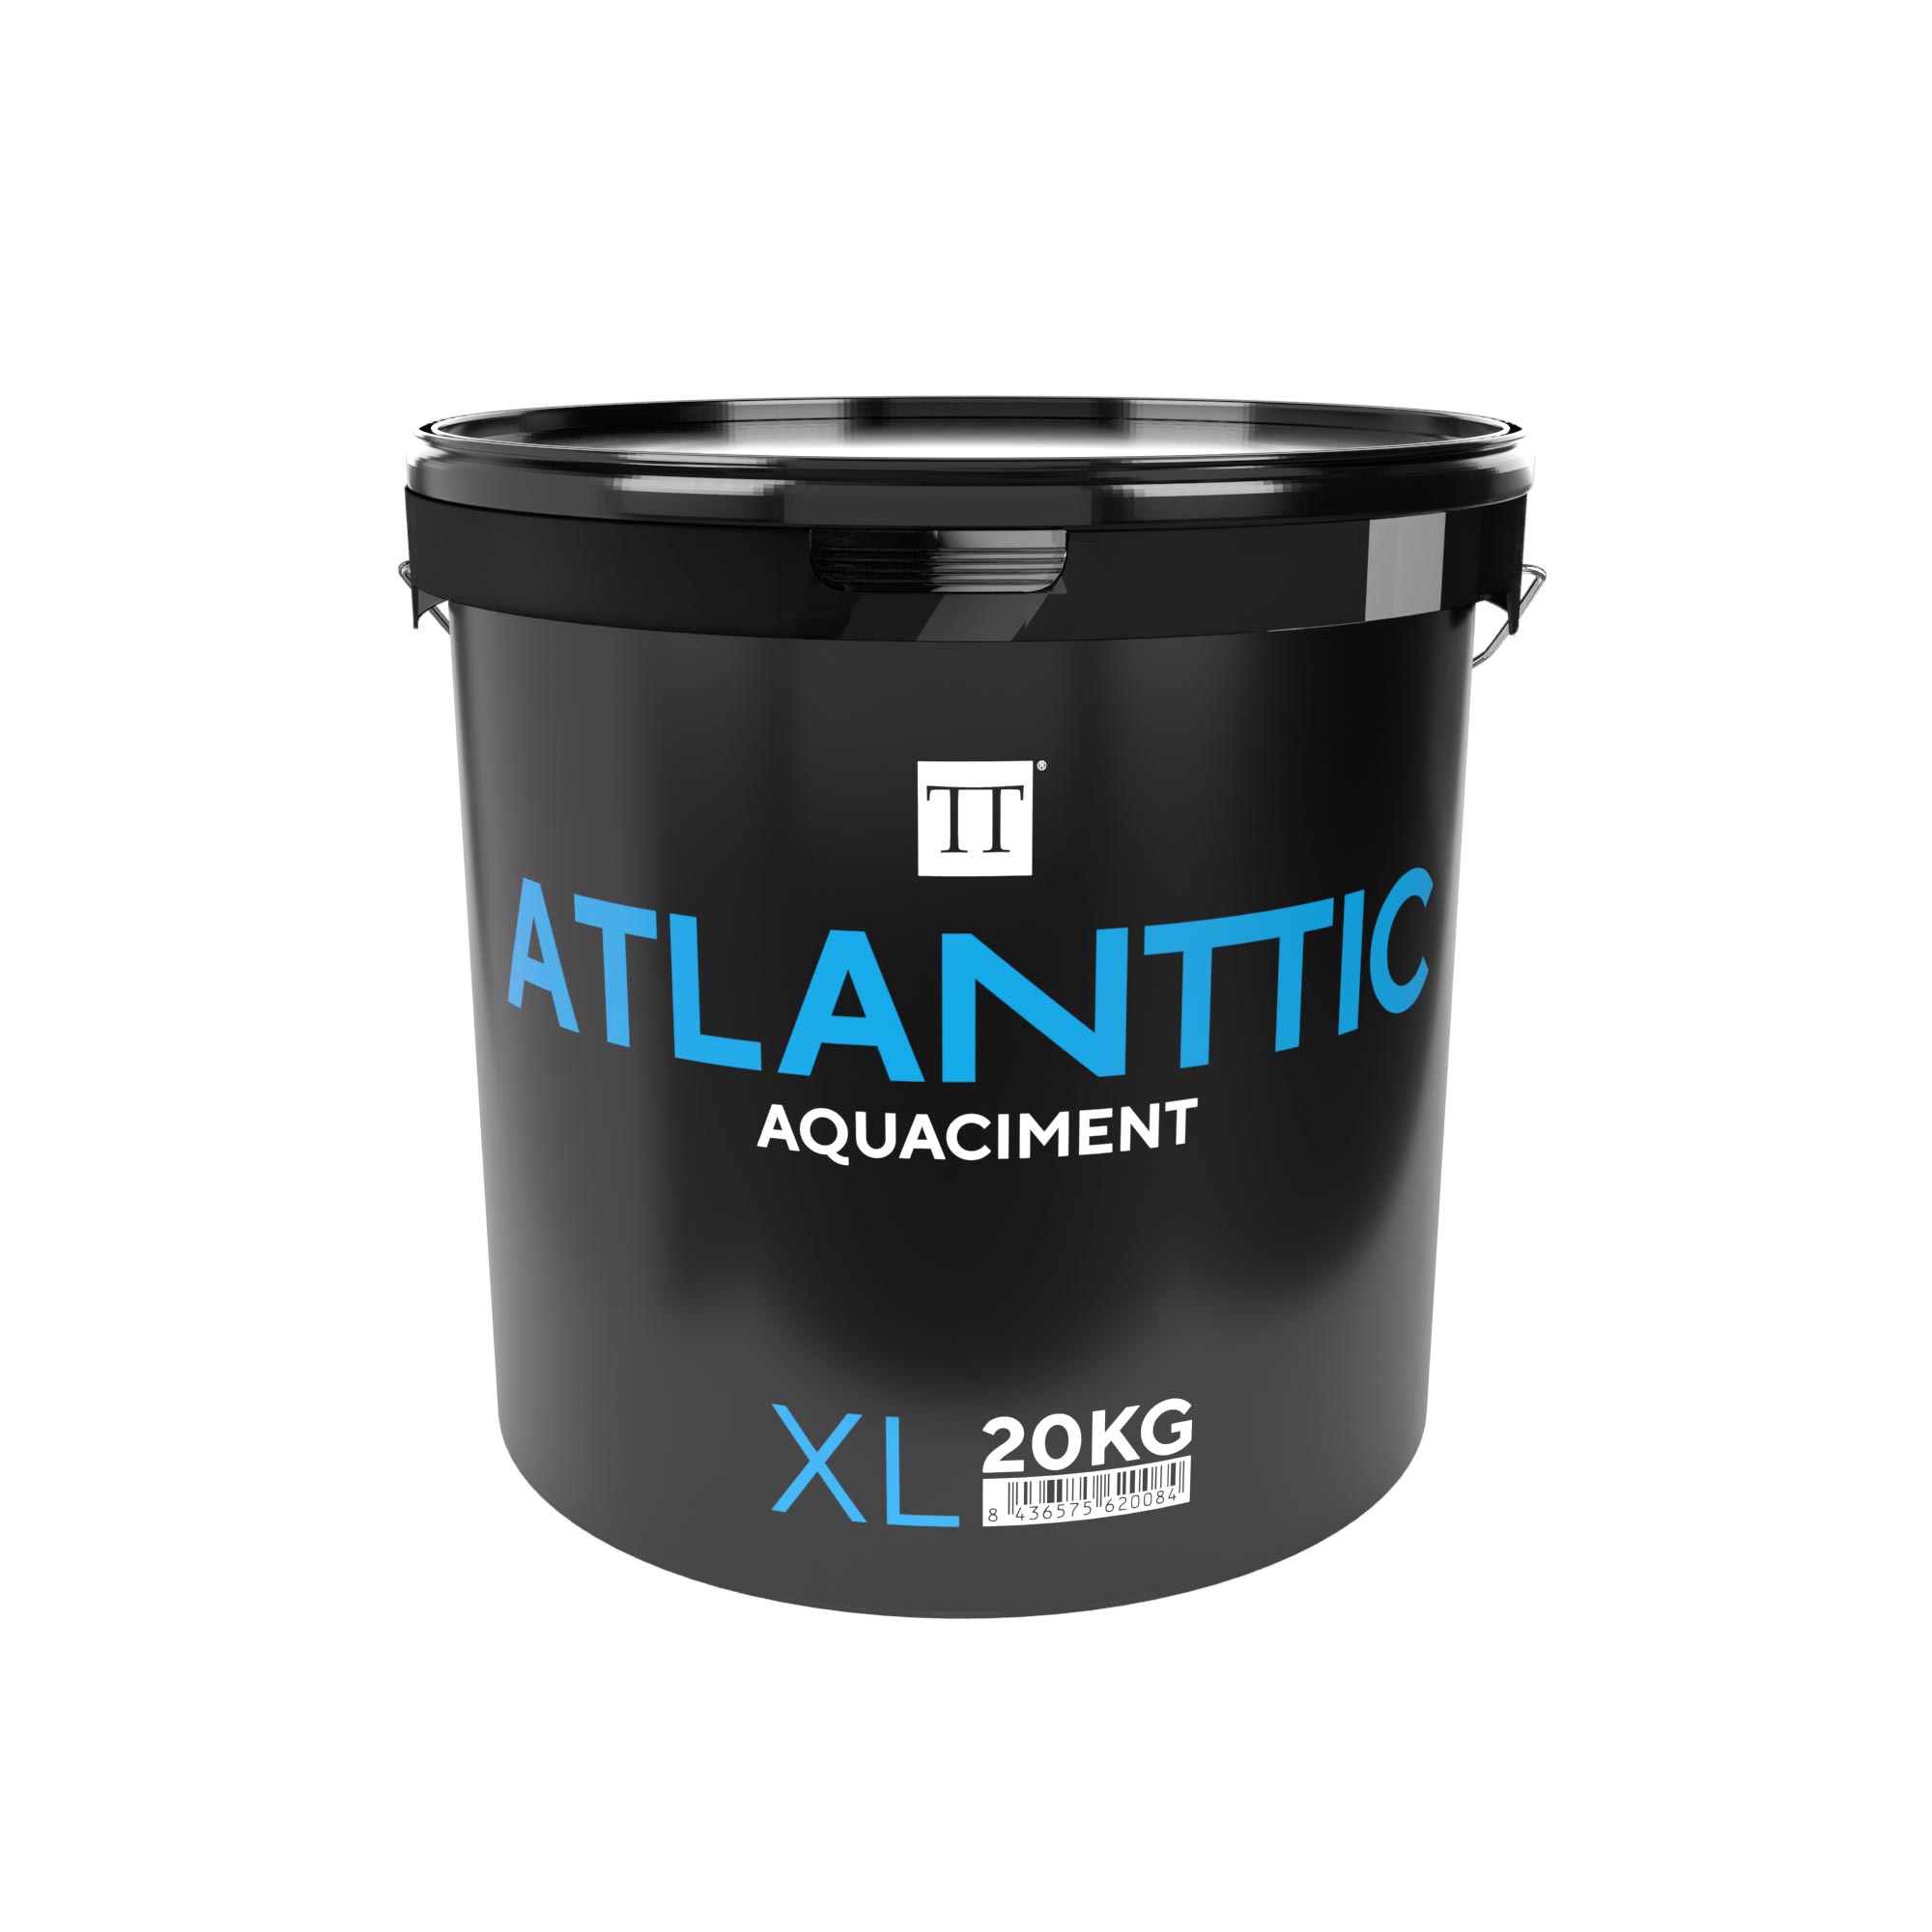 Atlanttic Aquaciment XL